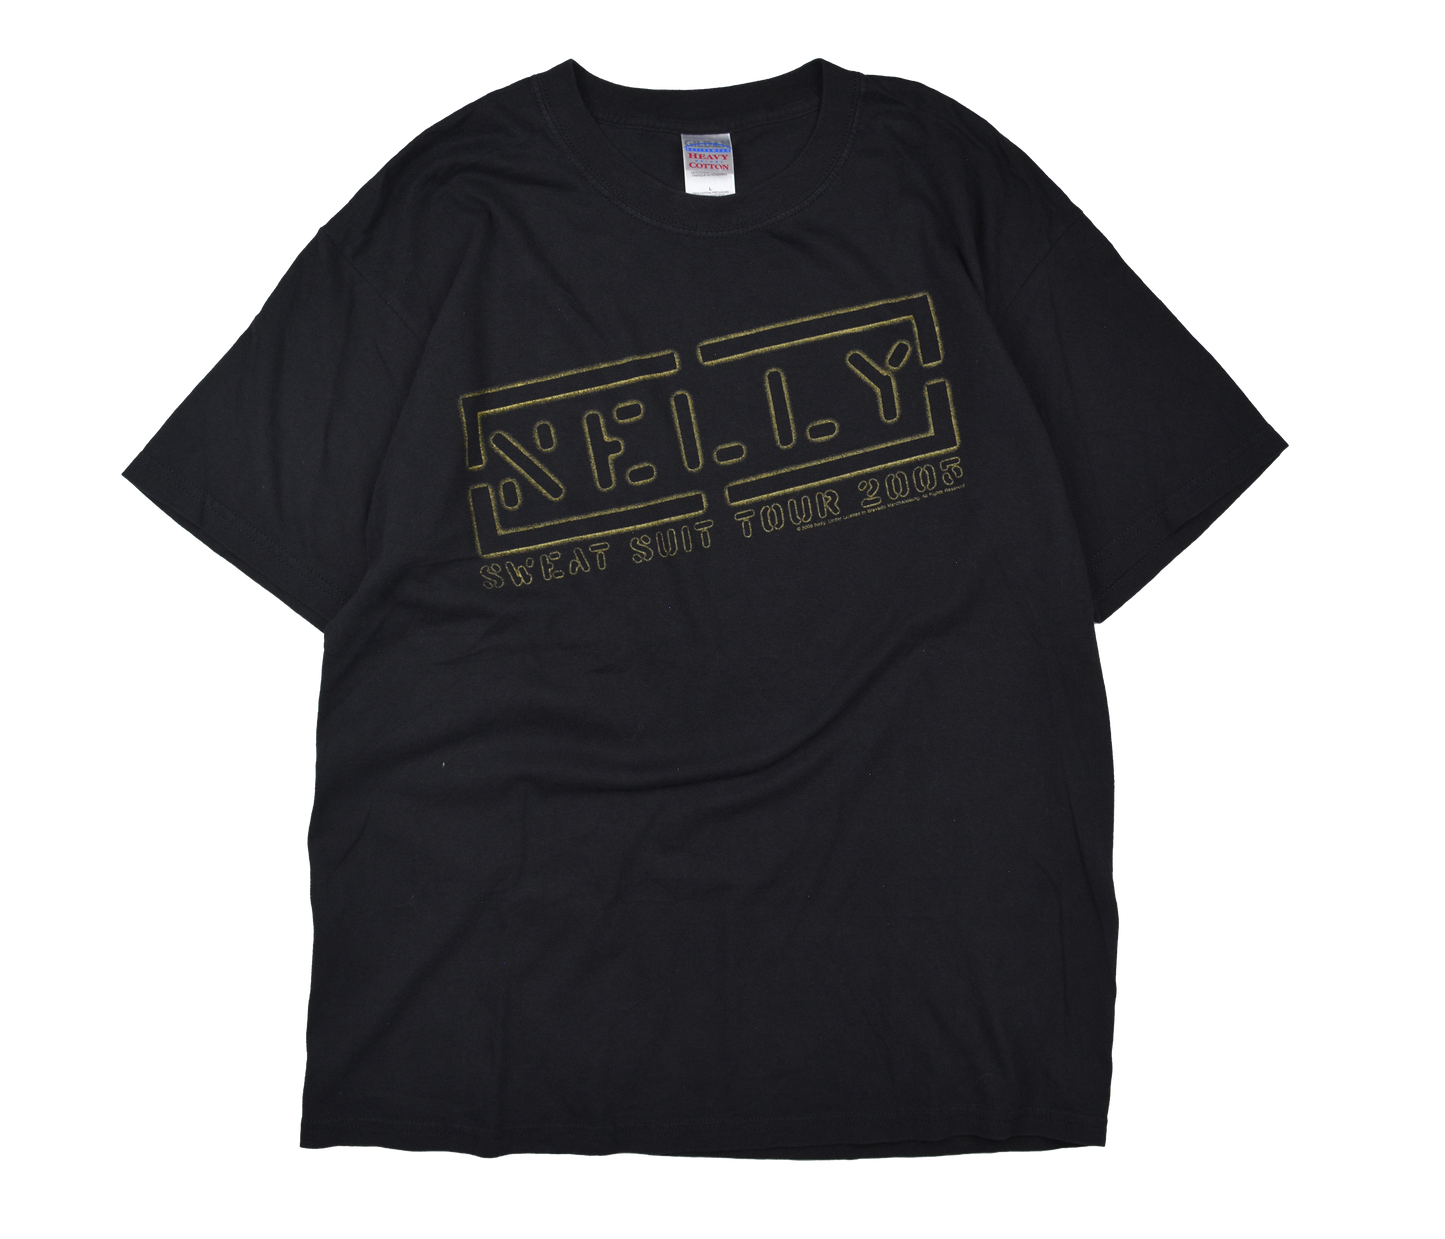 2005 Nelly Sweat Suit Tour T-Shirt // L